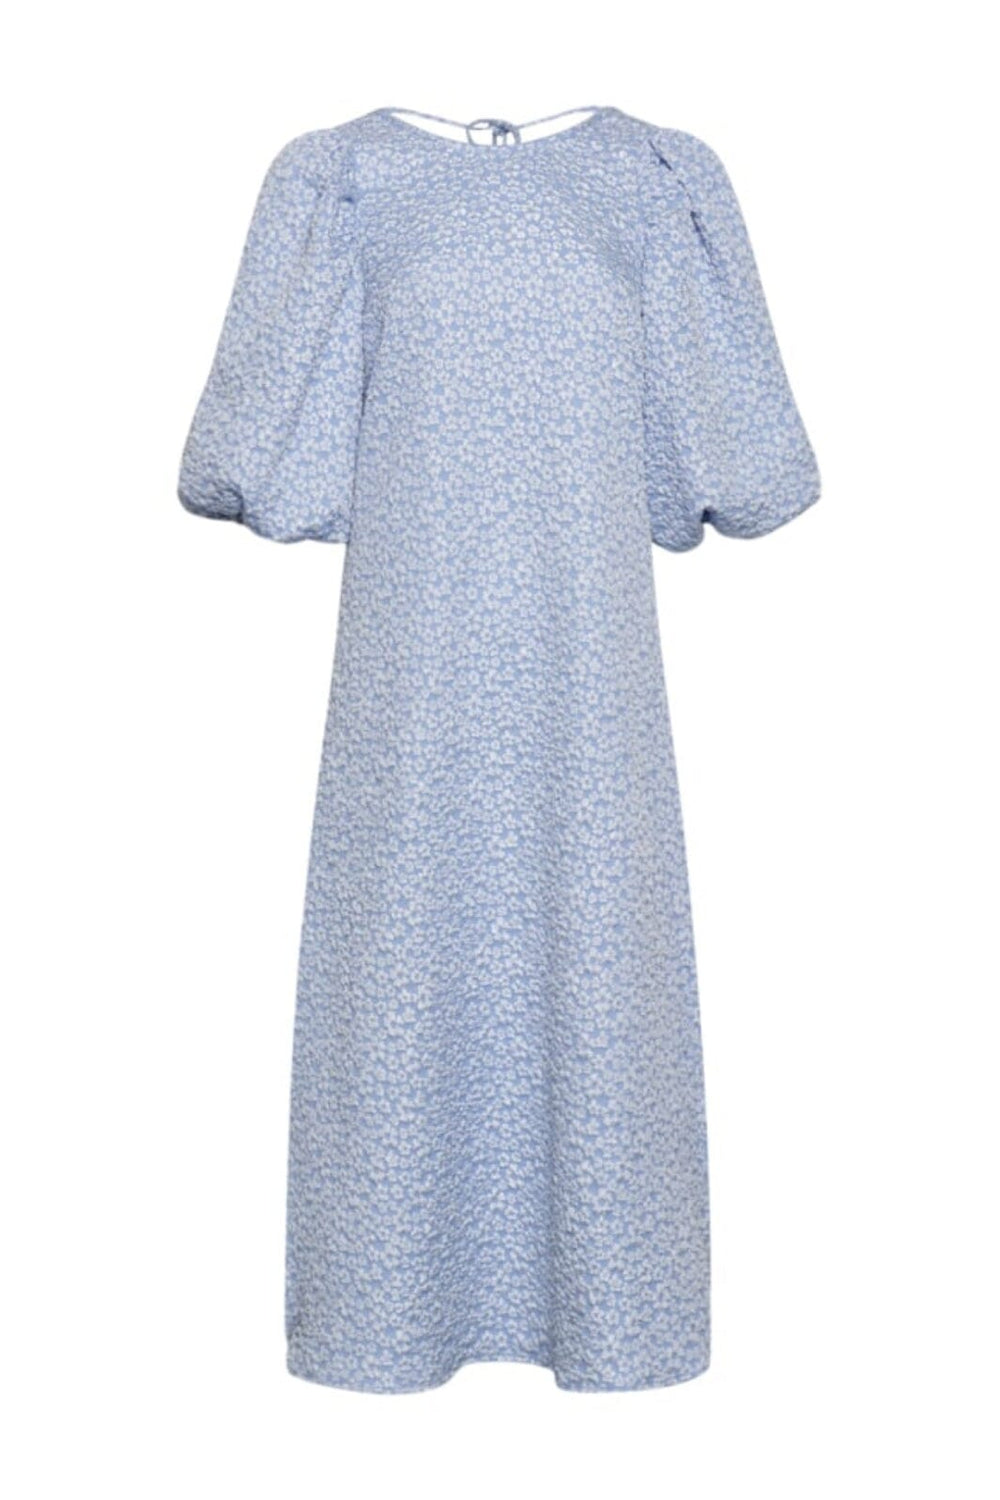 Noella - Reno Pastis Long Dress - Light Blue Kjoler 